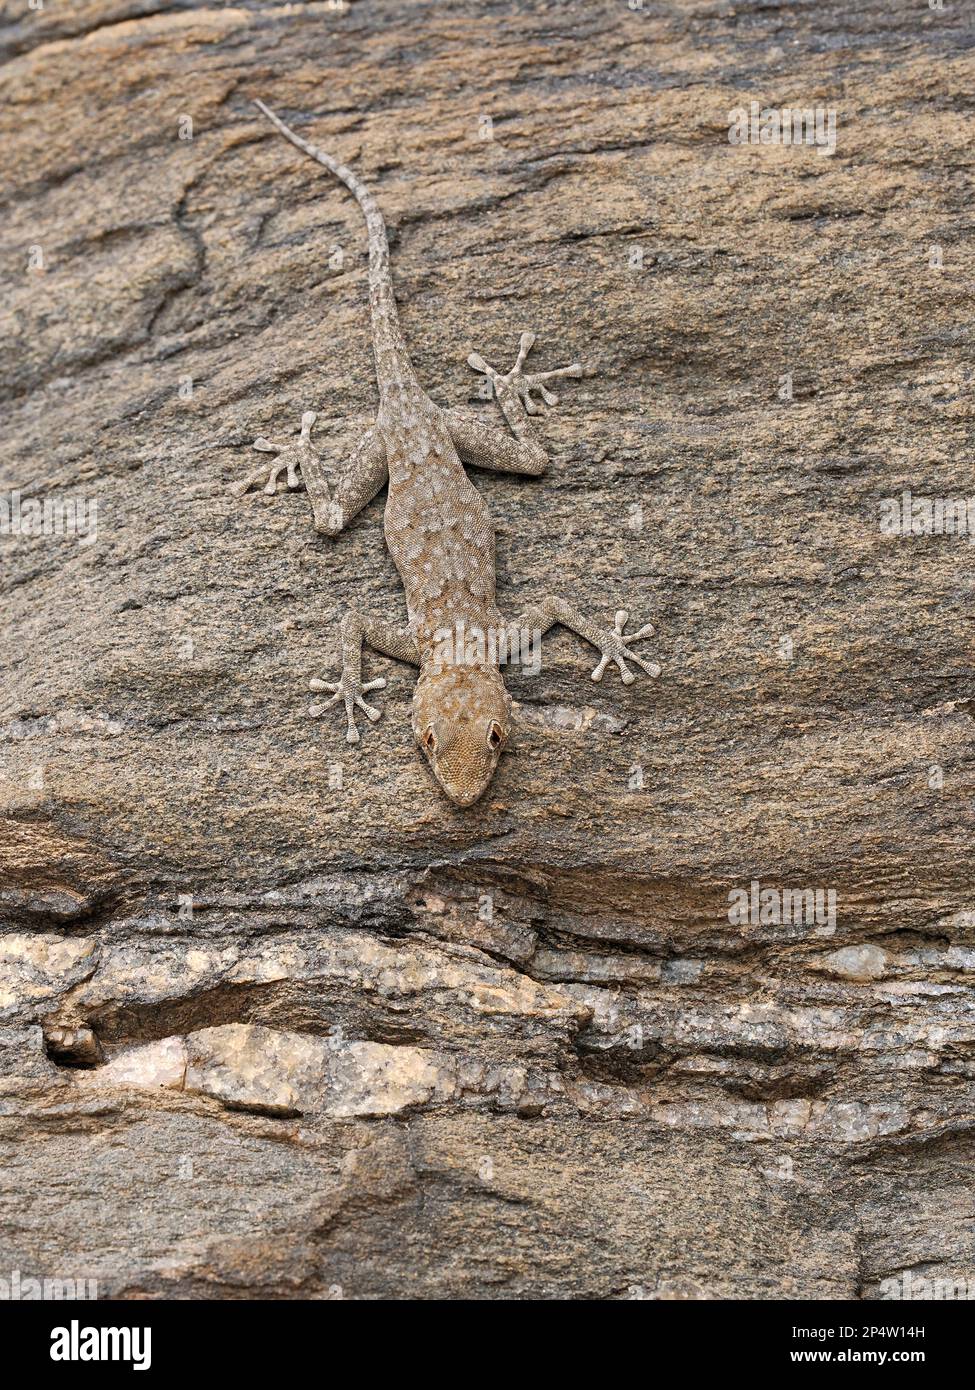 Bradfield's Namib Day Gecko (Rhoptropus bradfieldi) auf vertikaler Felswand, Namibia, Januar Stockfoto